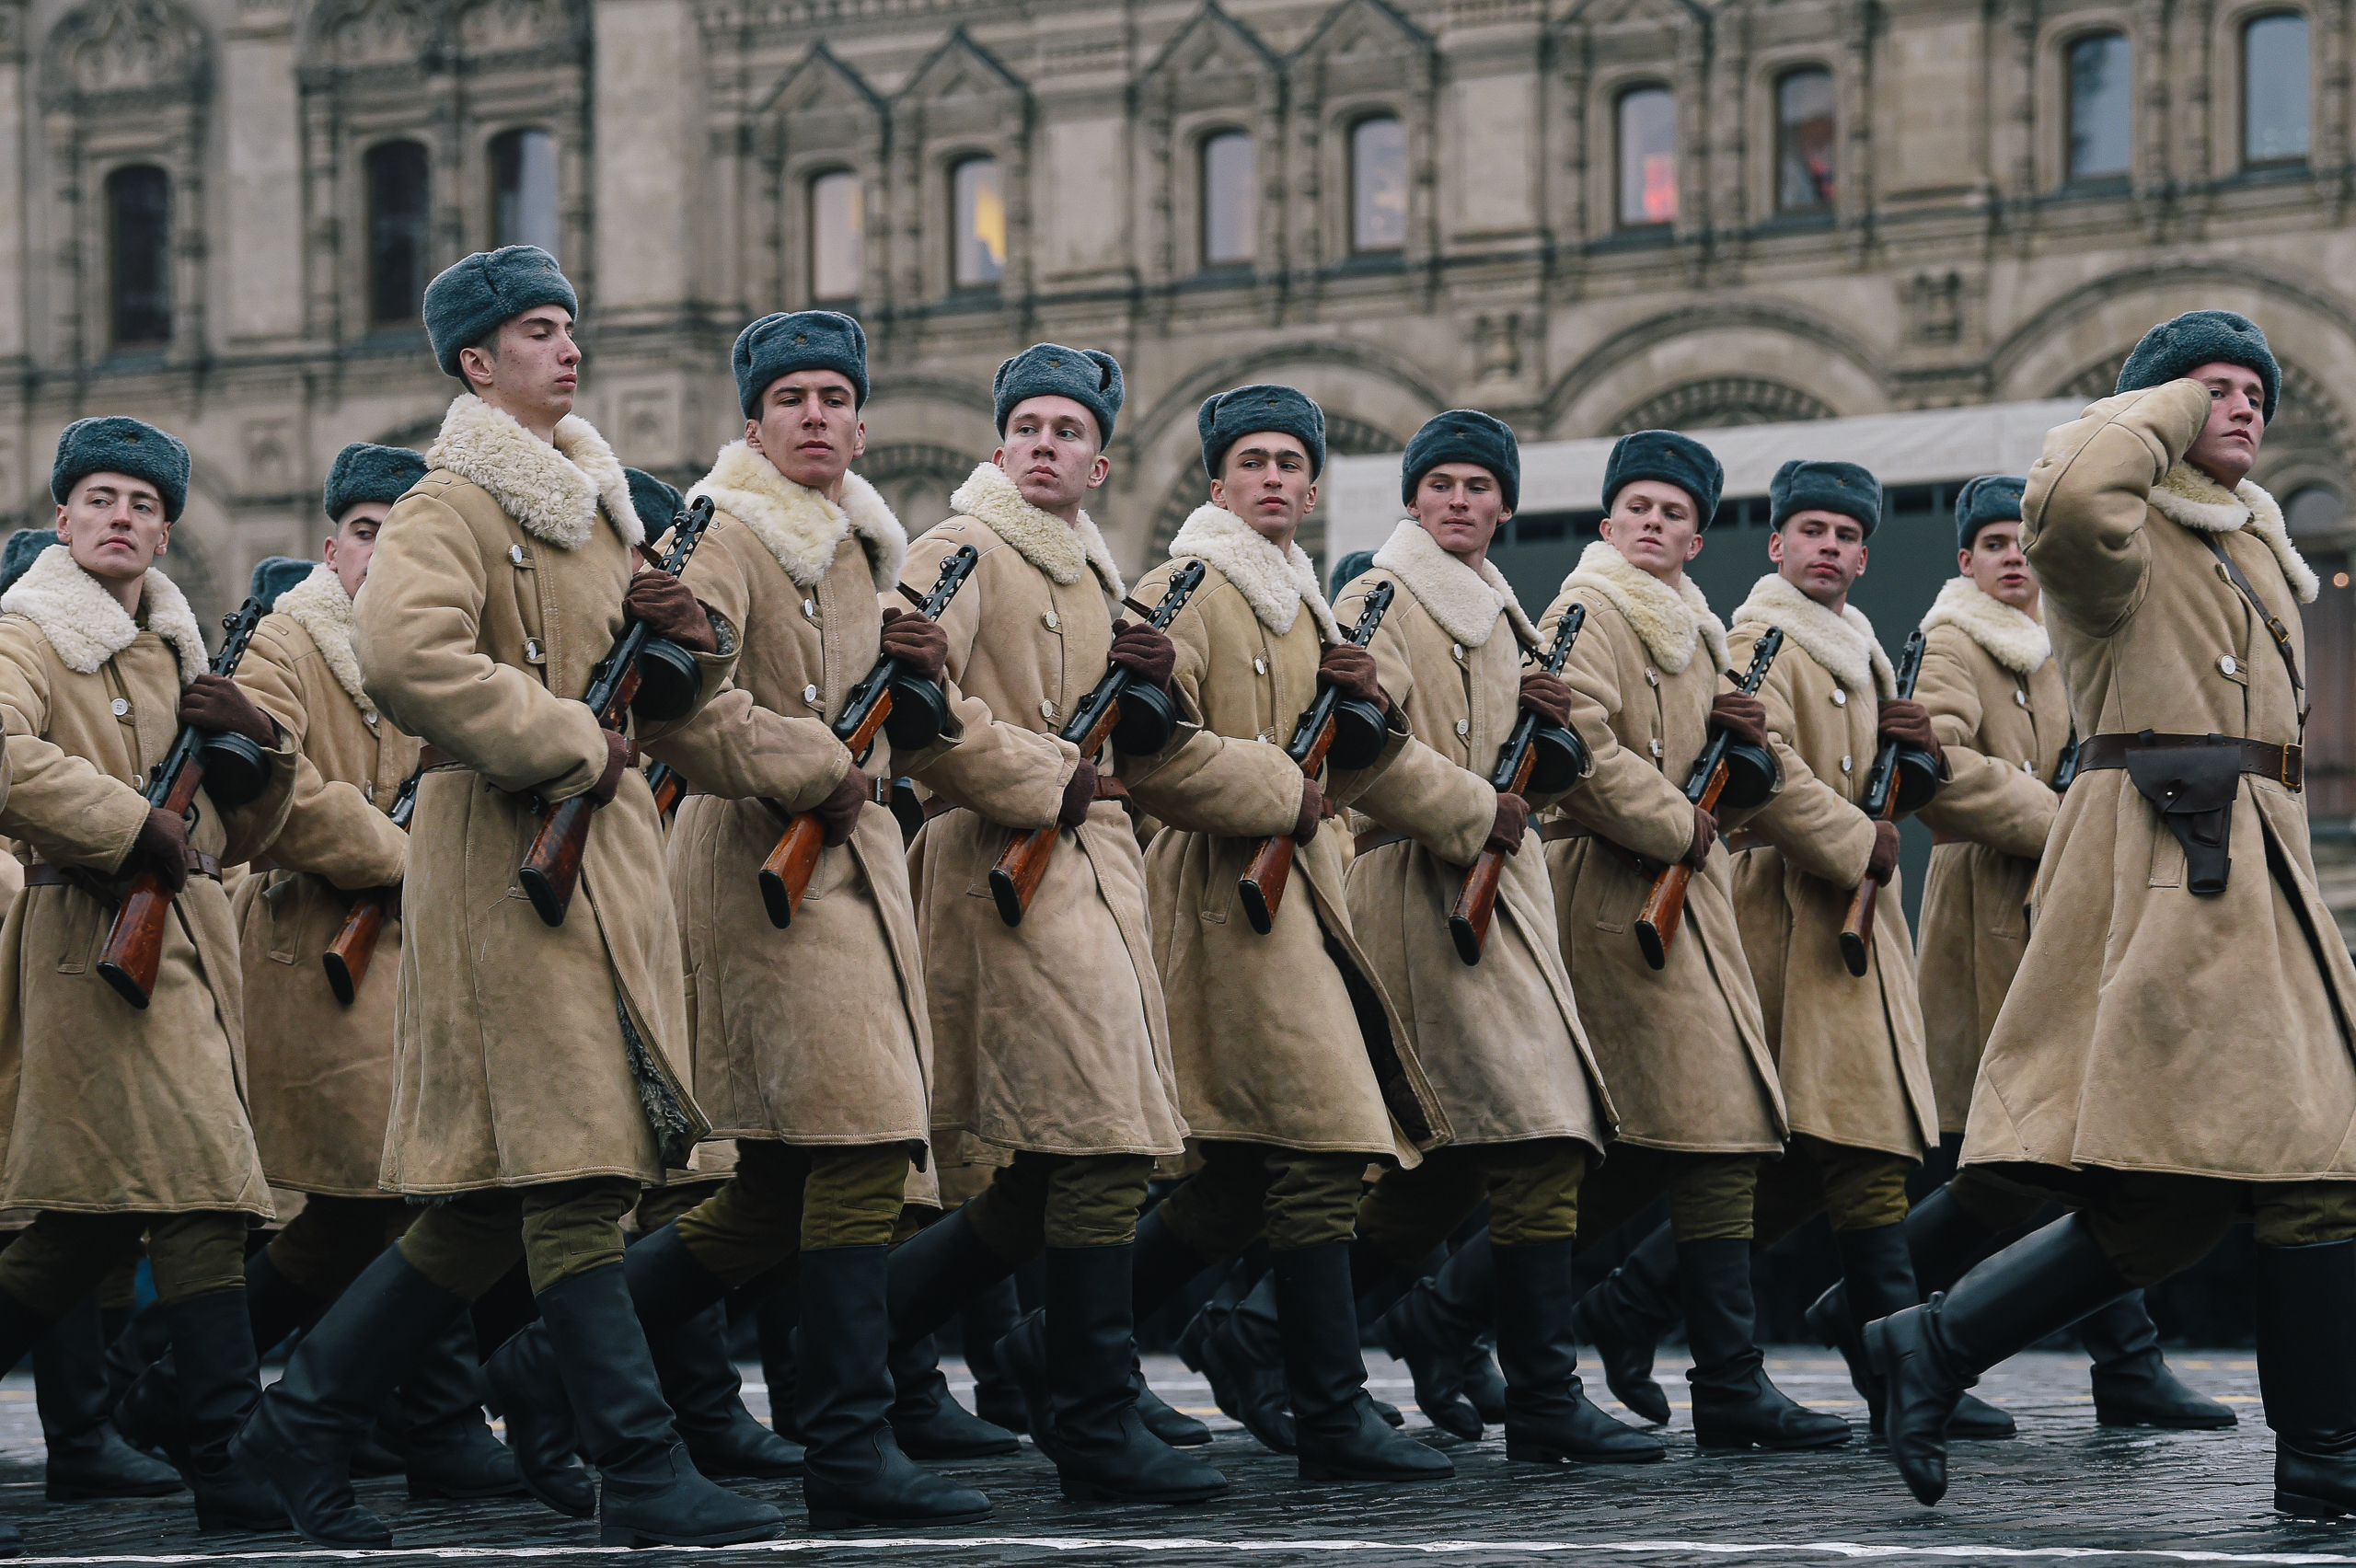 俄罗斯举行纪念1941年红场阅兵78周年彩排